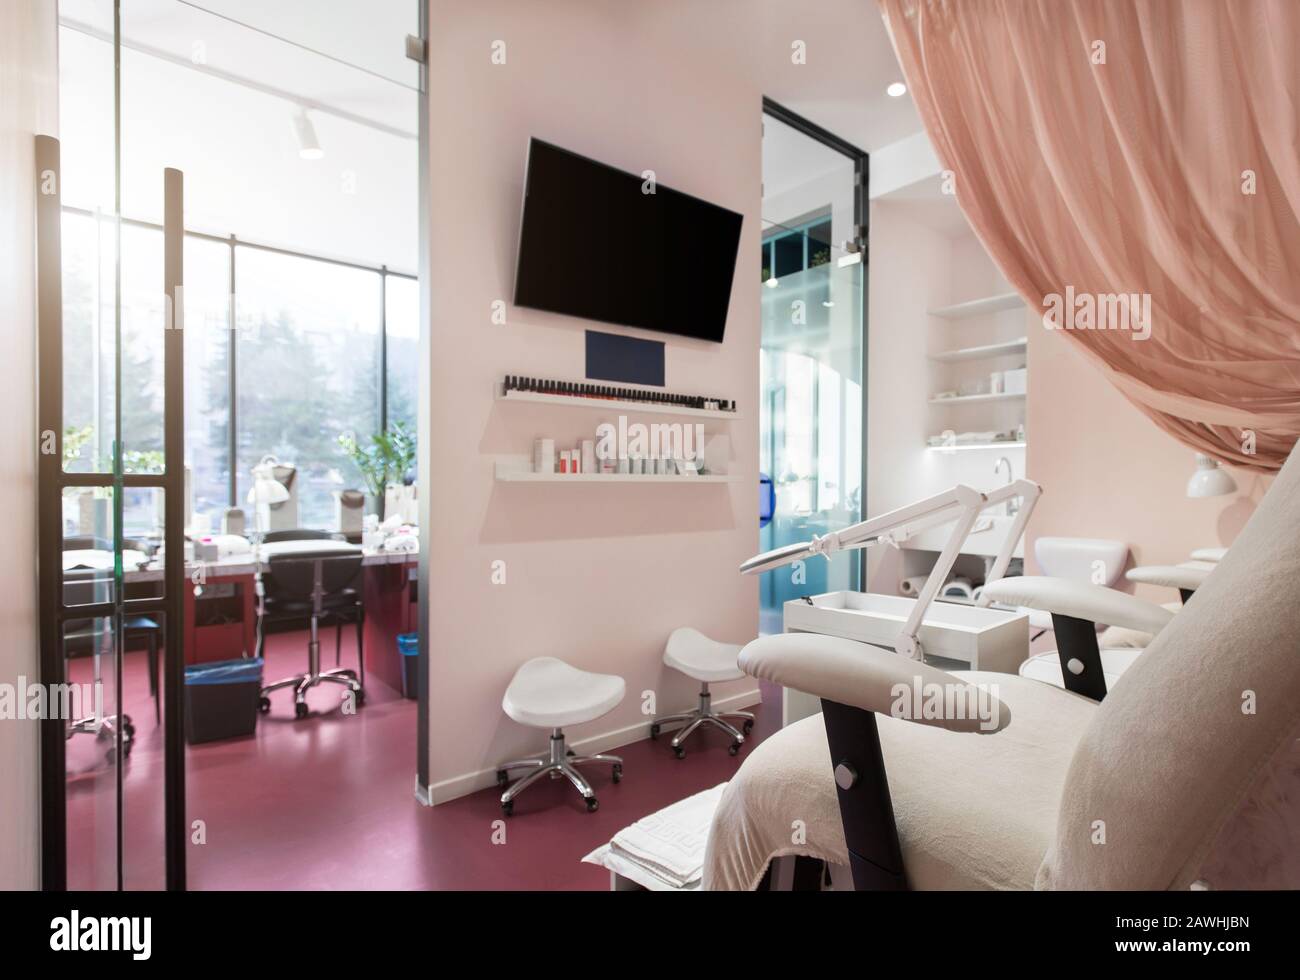 Salon de beauté Nclous, canapé-lit pédicure, style art déco Banque D'Images